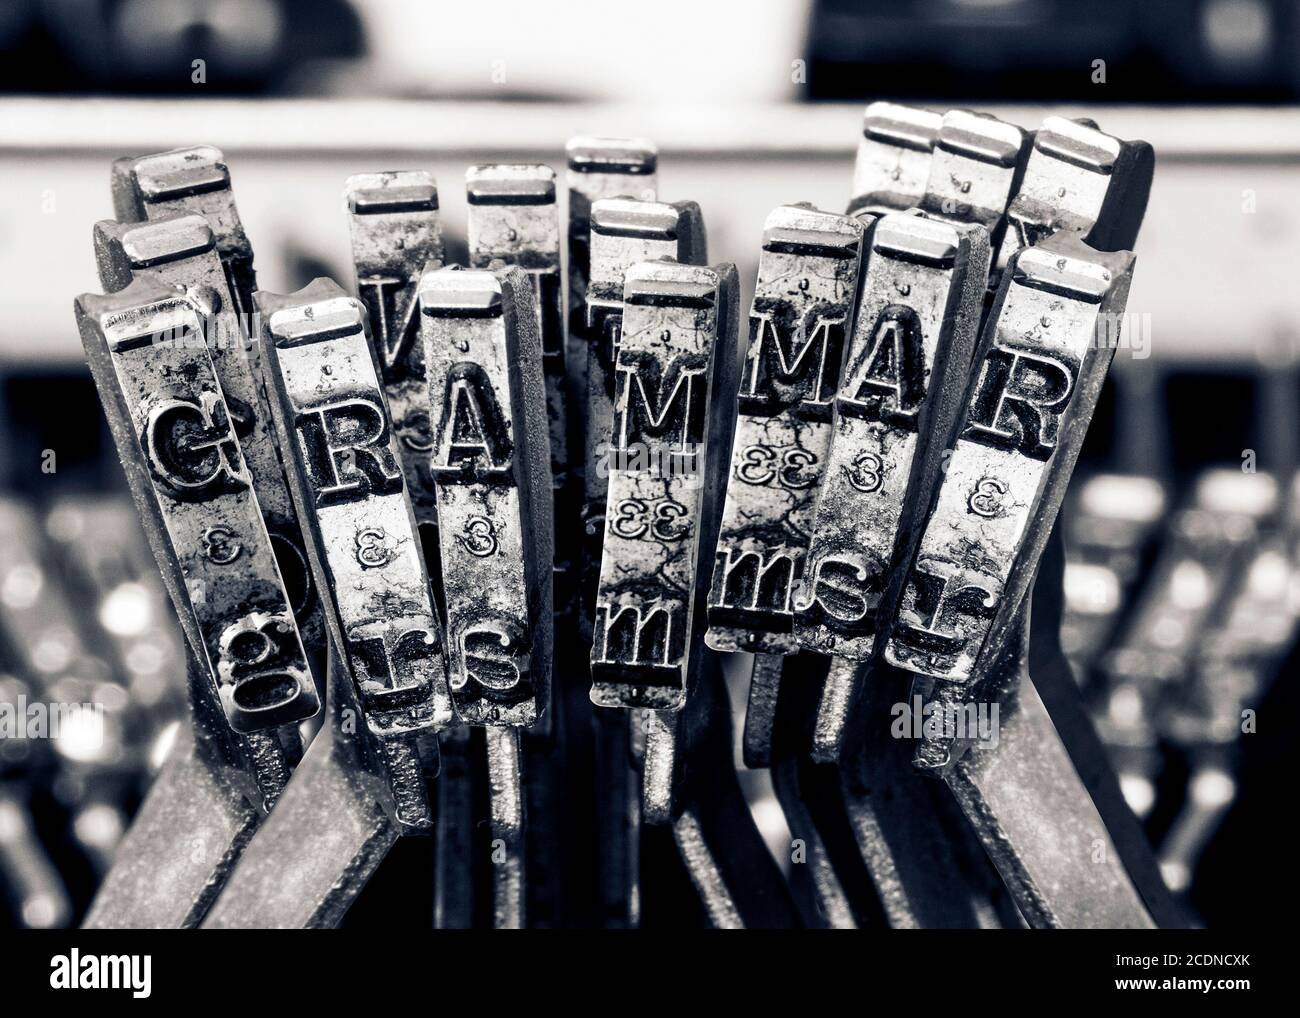 La parola GRAMMER con le vecchie chiavi typwriter monocromatico Foto Stock